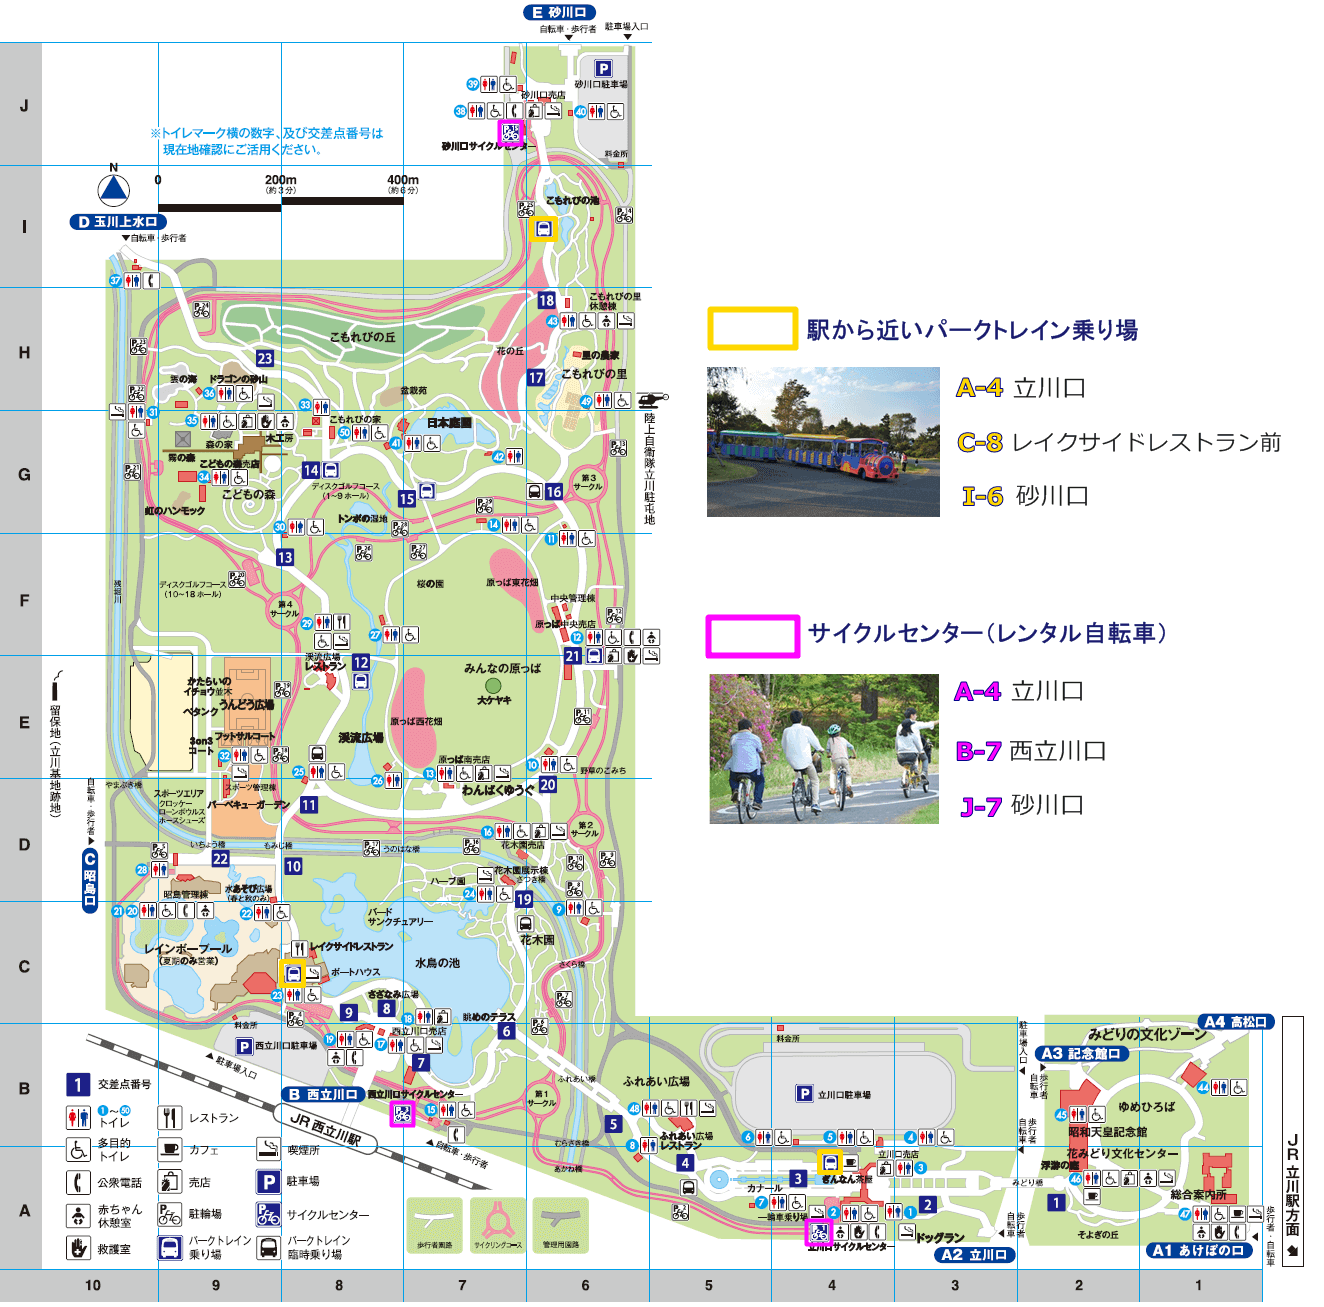 国営昭和記念公園へのアクセスと散策の 足 レンタサイクル パークトレイン について